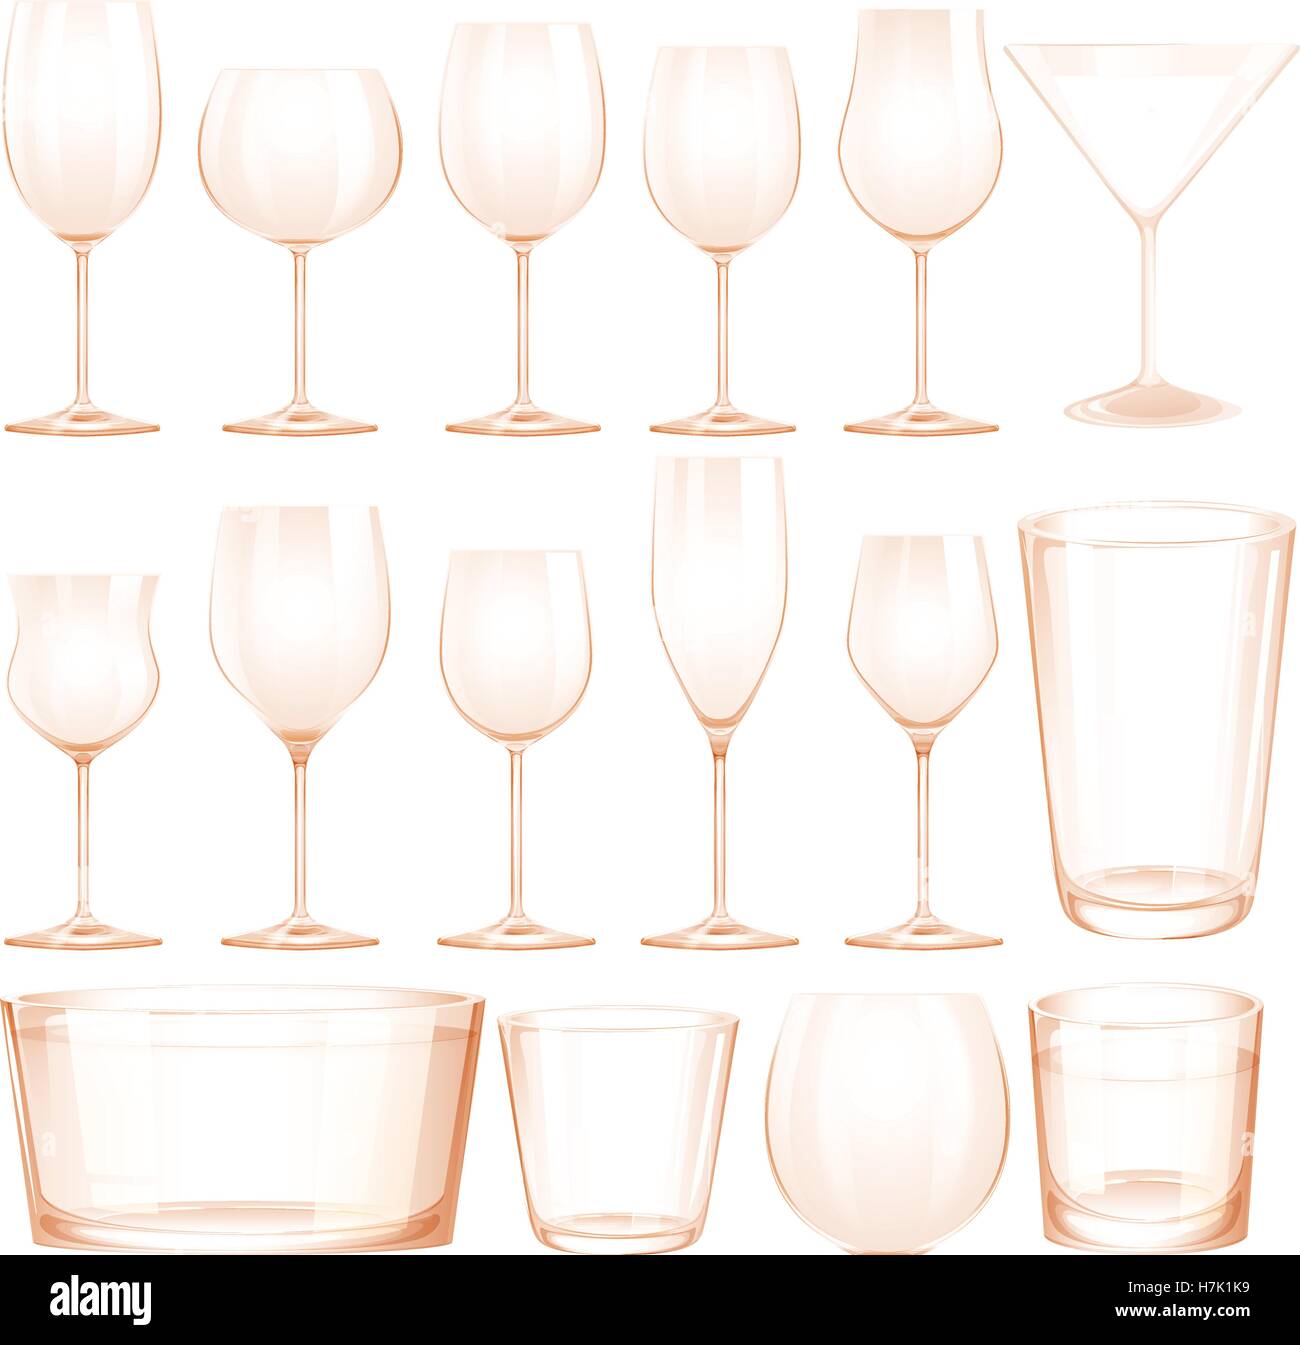 Différents types de verres illustration Image Vectorielle Stock - Alamy